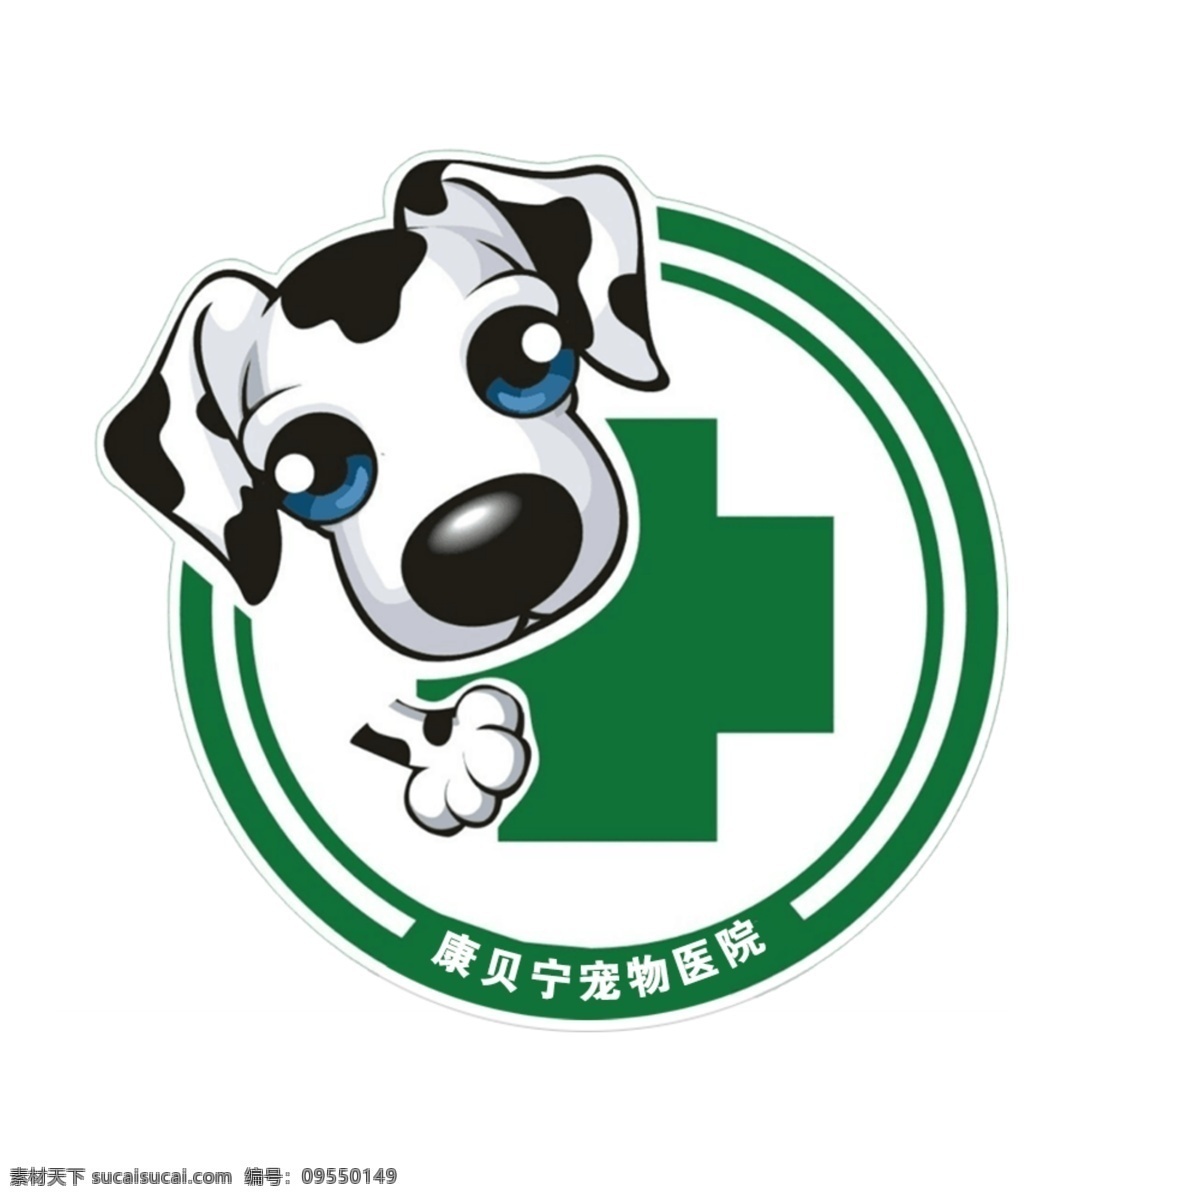 宠物医院 logo 宠物 狗 医院 可爱 logo设计